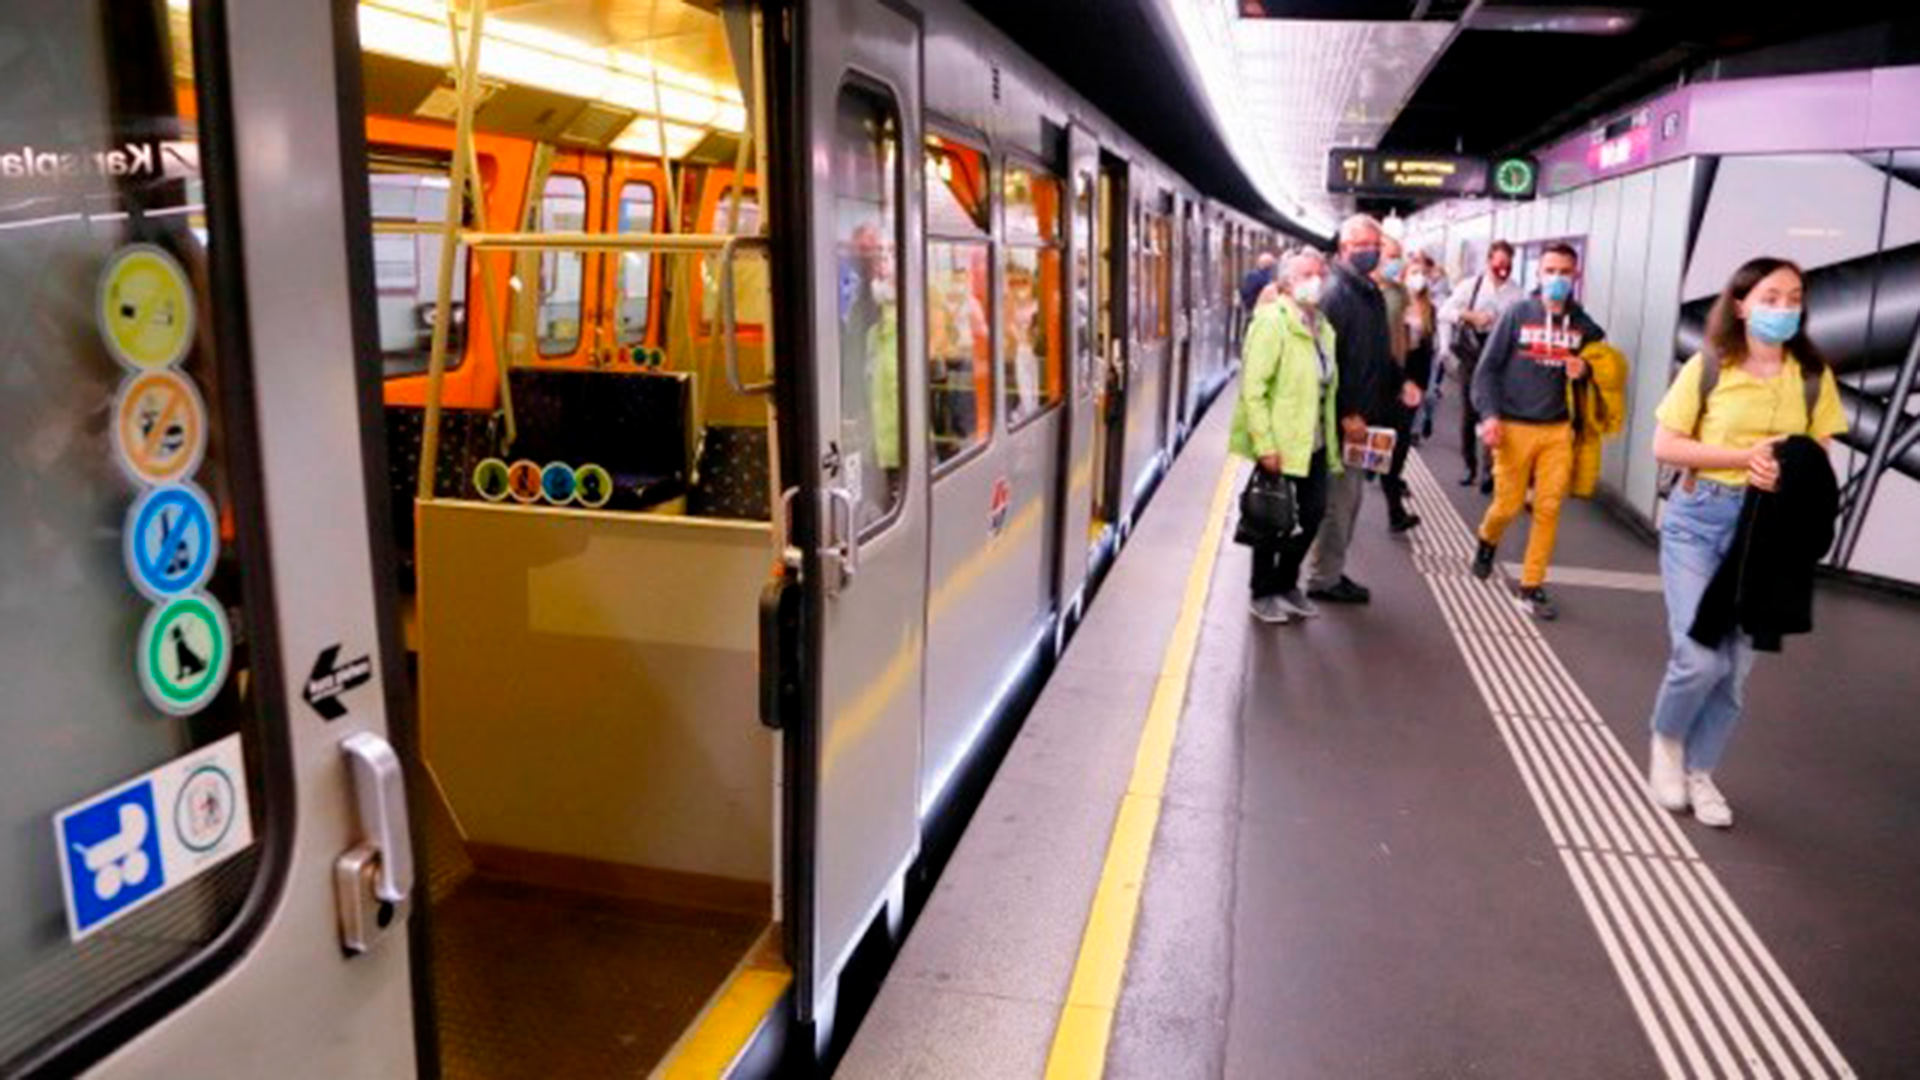 Si bien el uso del barbijo dejó de ser obligatorio en el metro de Buenos Aires a partir del jueves pasado, muchas personas optan por seguir usándolo (Foto/Reuters)